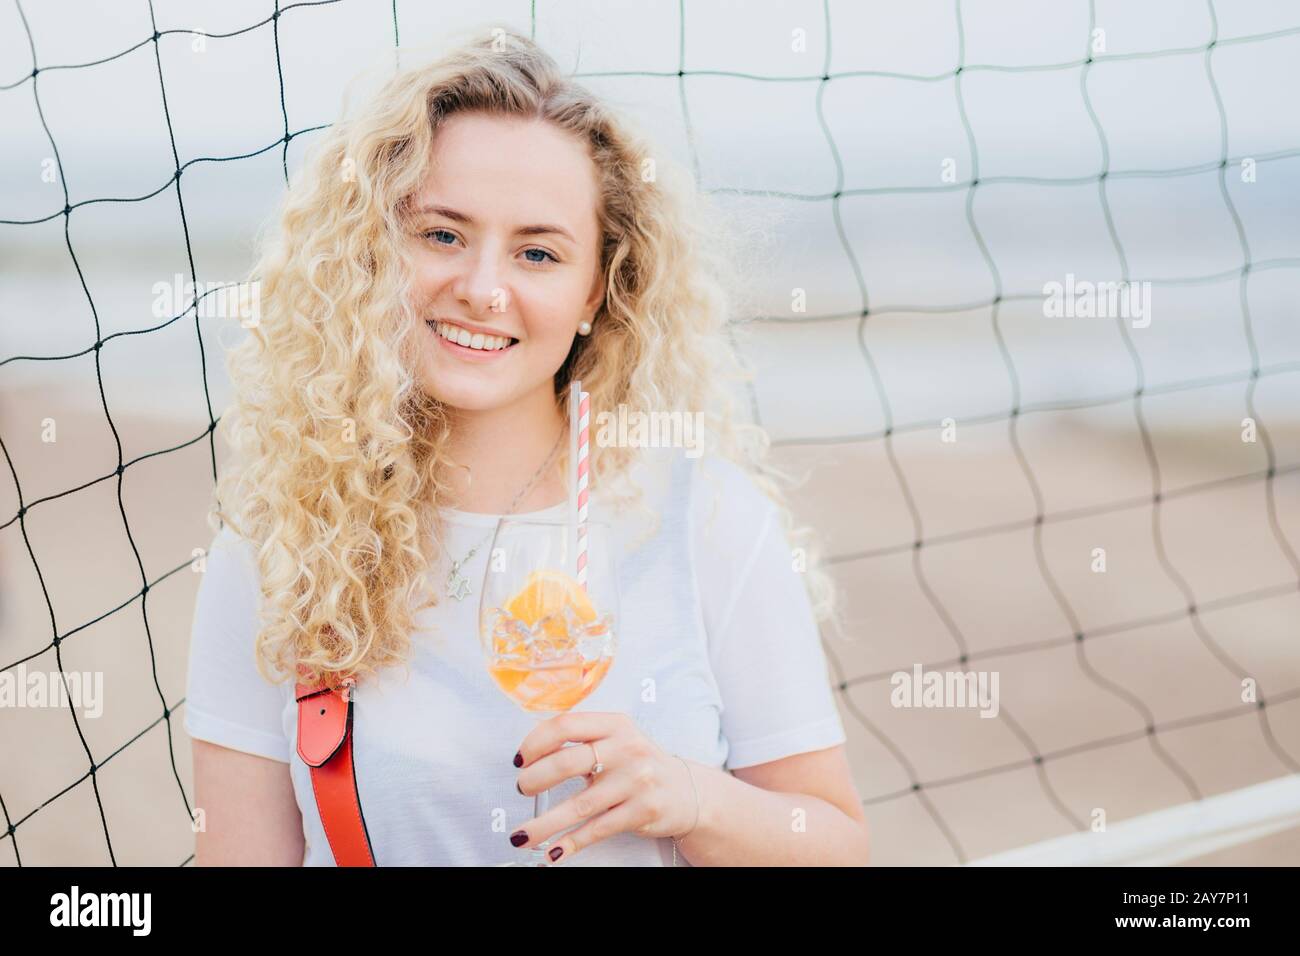 Die entzückende junge Europäische Frau hat buschige, lockige Haare, lächelt sanft, hält ein Glas Orangencocktail, steht in der Nähe des Tennisnetzes mit Kopierraum rechts f Stockfoto